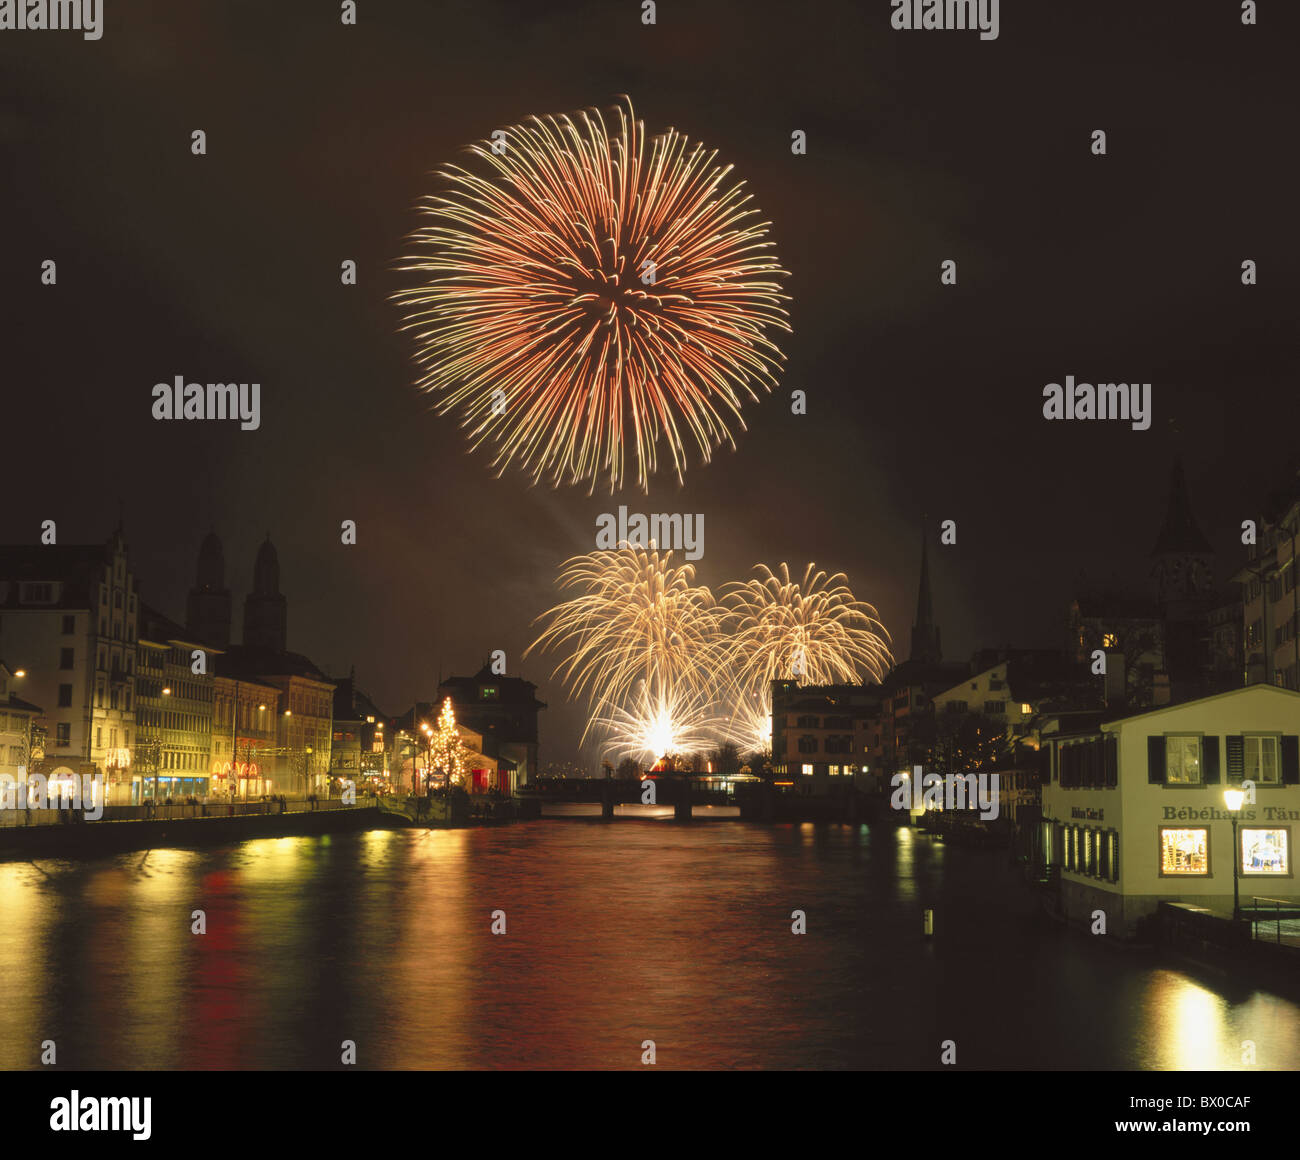 Feuerwerk Licht Effekt Limmat River Fluss Limmat Quai Schweiz Europa New Year's Eve Silvester nahe Stockfoto